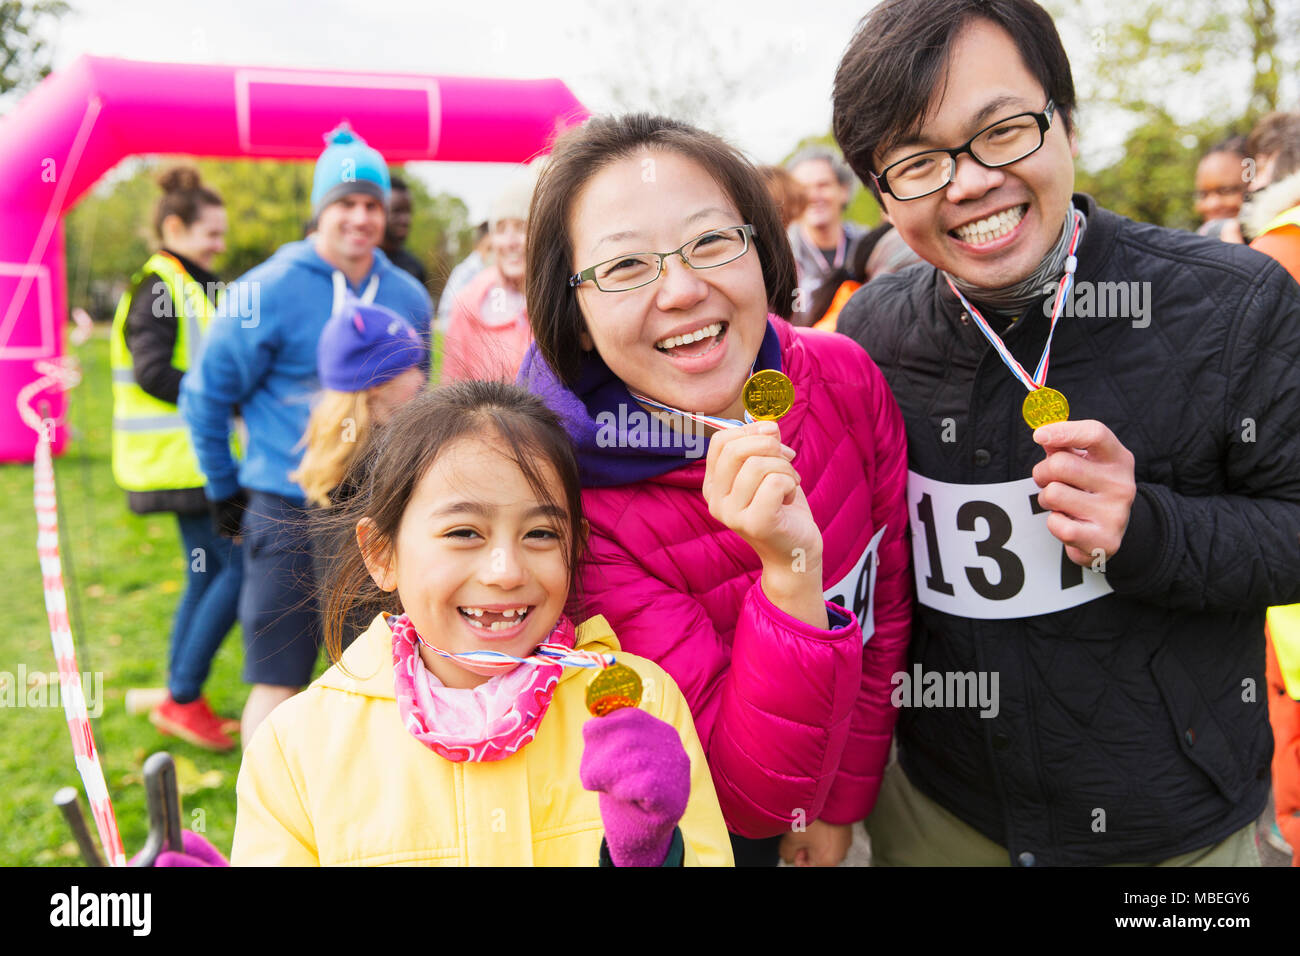 Retrato de familia entusiastas corredores mostrando las medallas de la caridad ejecutar Foto de stock